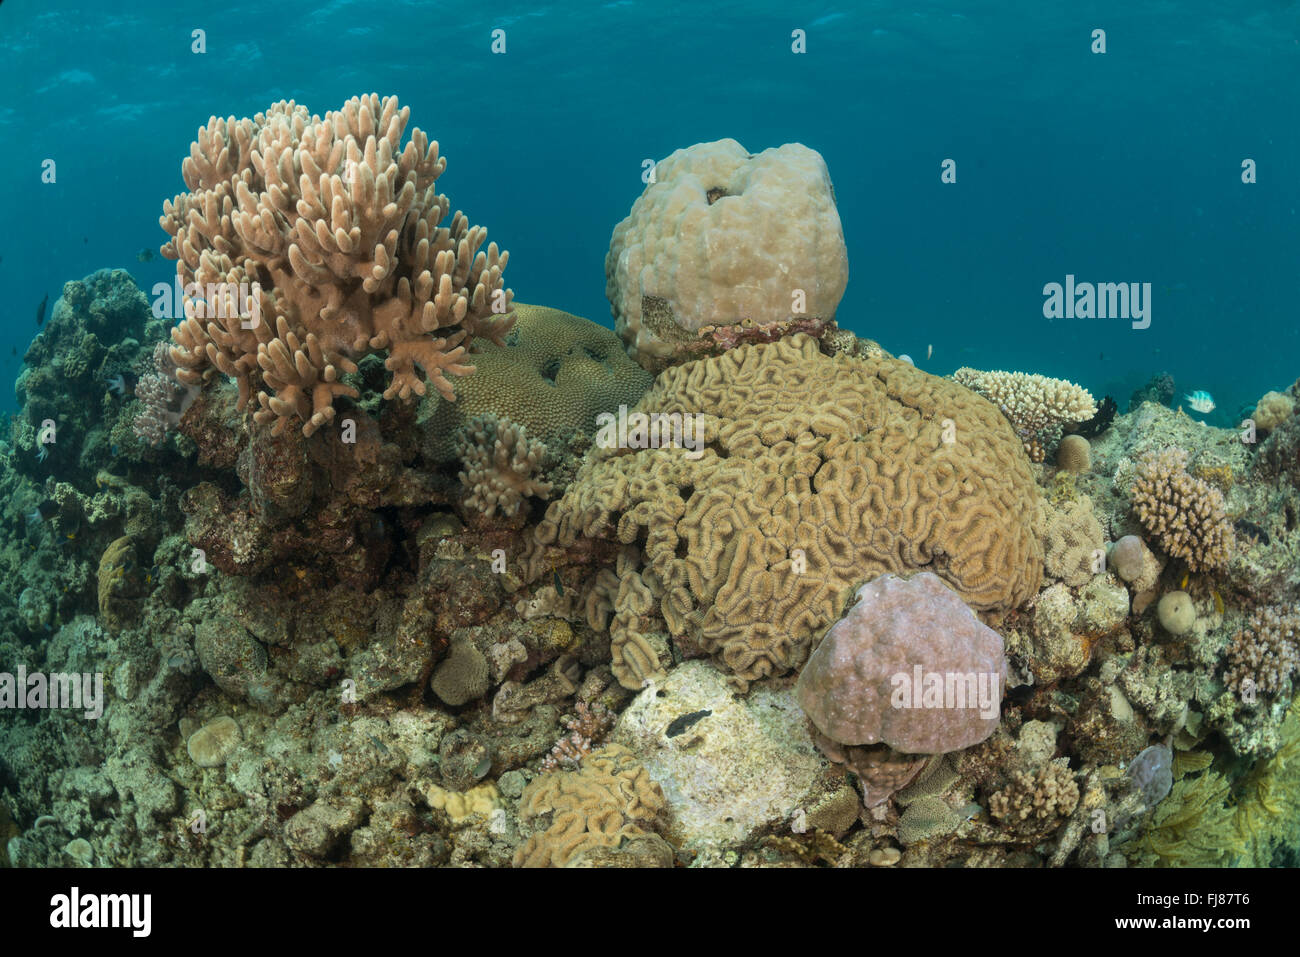 Pocos luchando sanos corales masivos intentando permanecer vivo rodeado por corales cubiertos de algas. Esta triste de la Gran Barrera de Arrecife posiblemente está devastada por la corona de espinas brote o los daños de un ciclón. Foto de stock